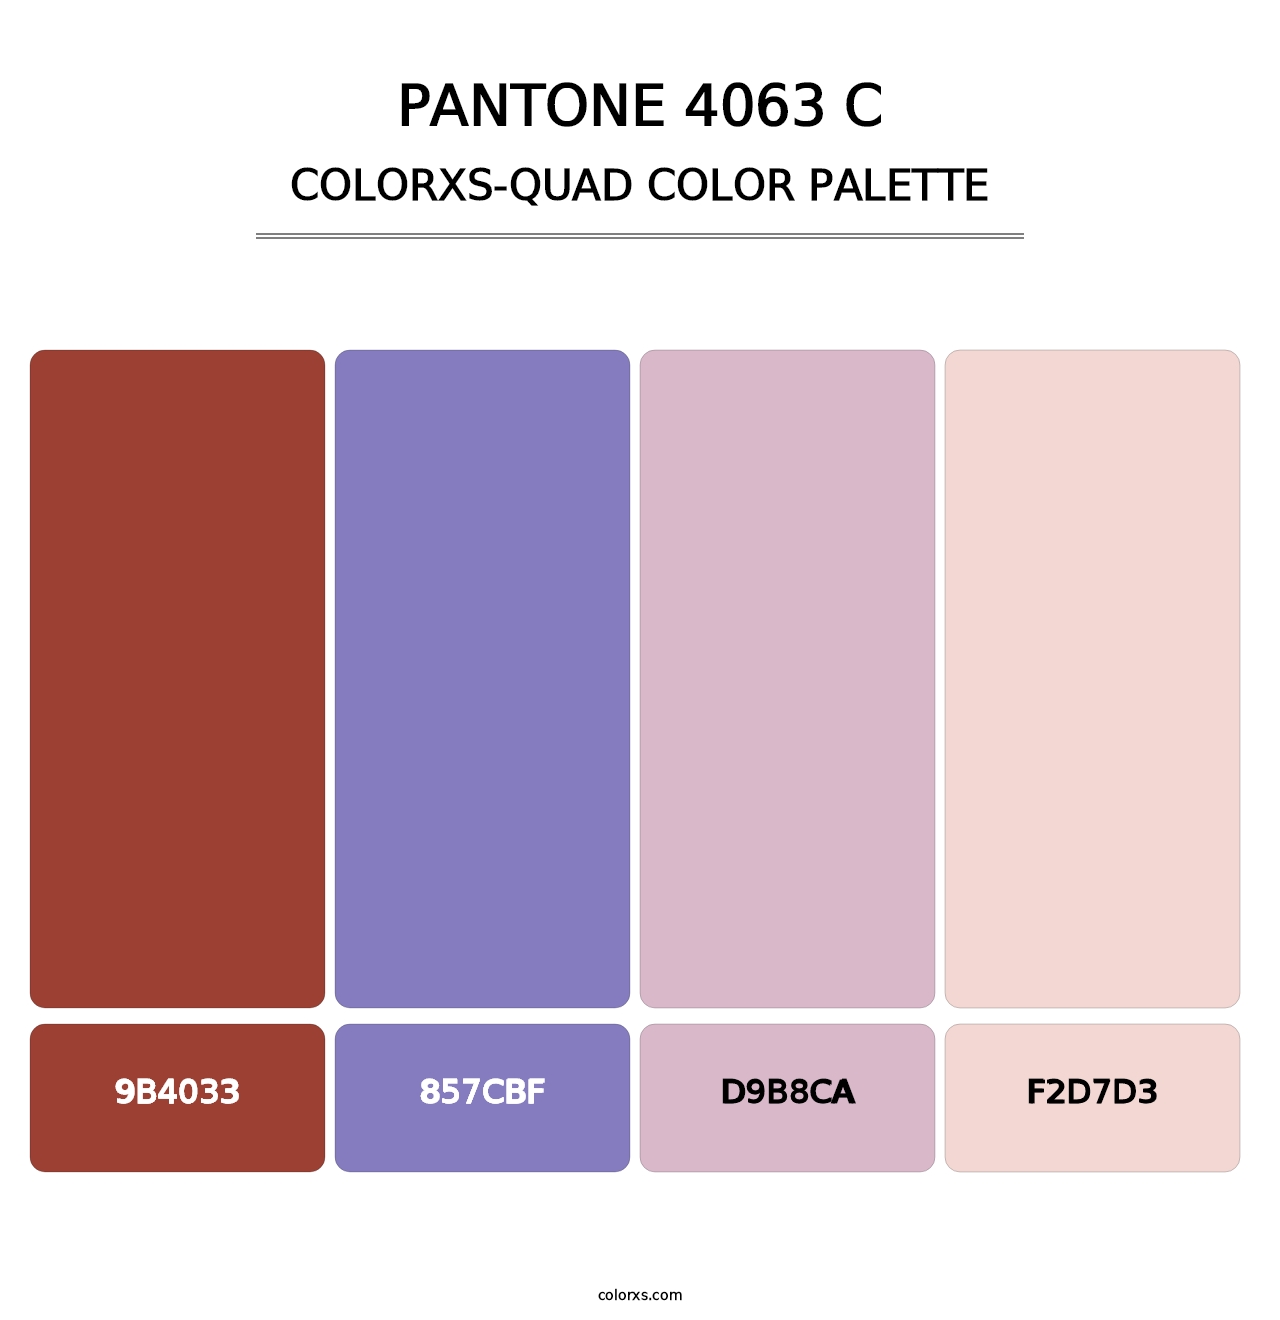 PANTONE 4063 C - Colorxs Quad Palette